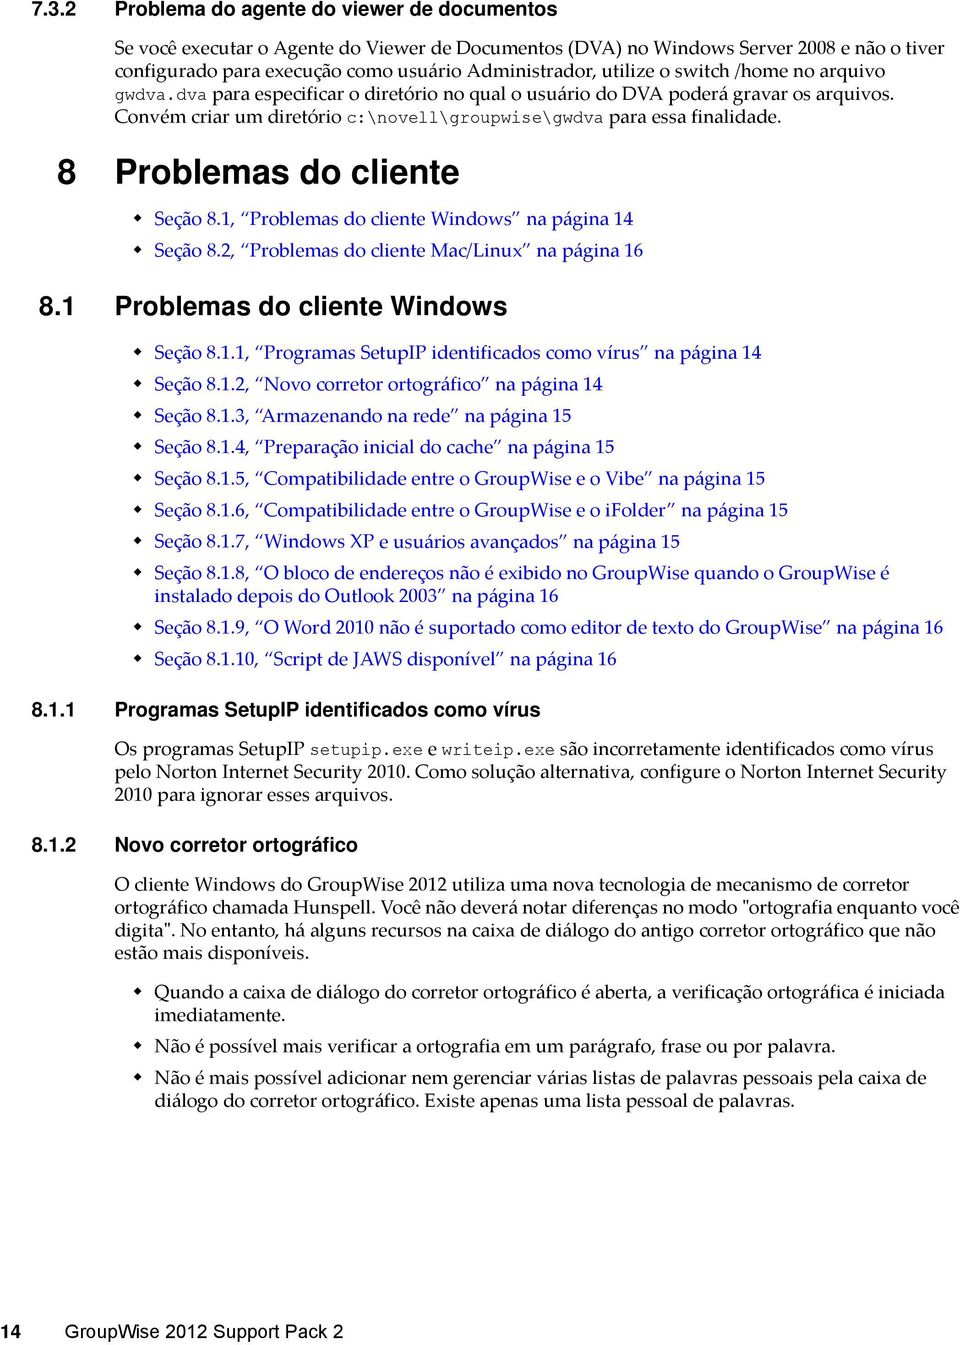 8 Problemas do cliente Seção 8.1, Problemas do cliente Windows na página 14 Seção 8.2, Problemas do cliente Mac/Linux na página 16 8.1 Problemas do cliente Windows Seção 8.1.1, Programas SetupIP identificados como vírus na página 14 Seção 8.